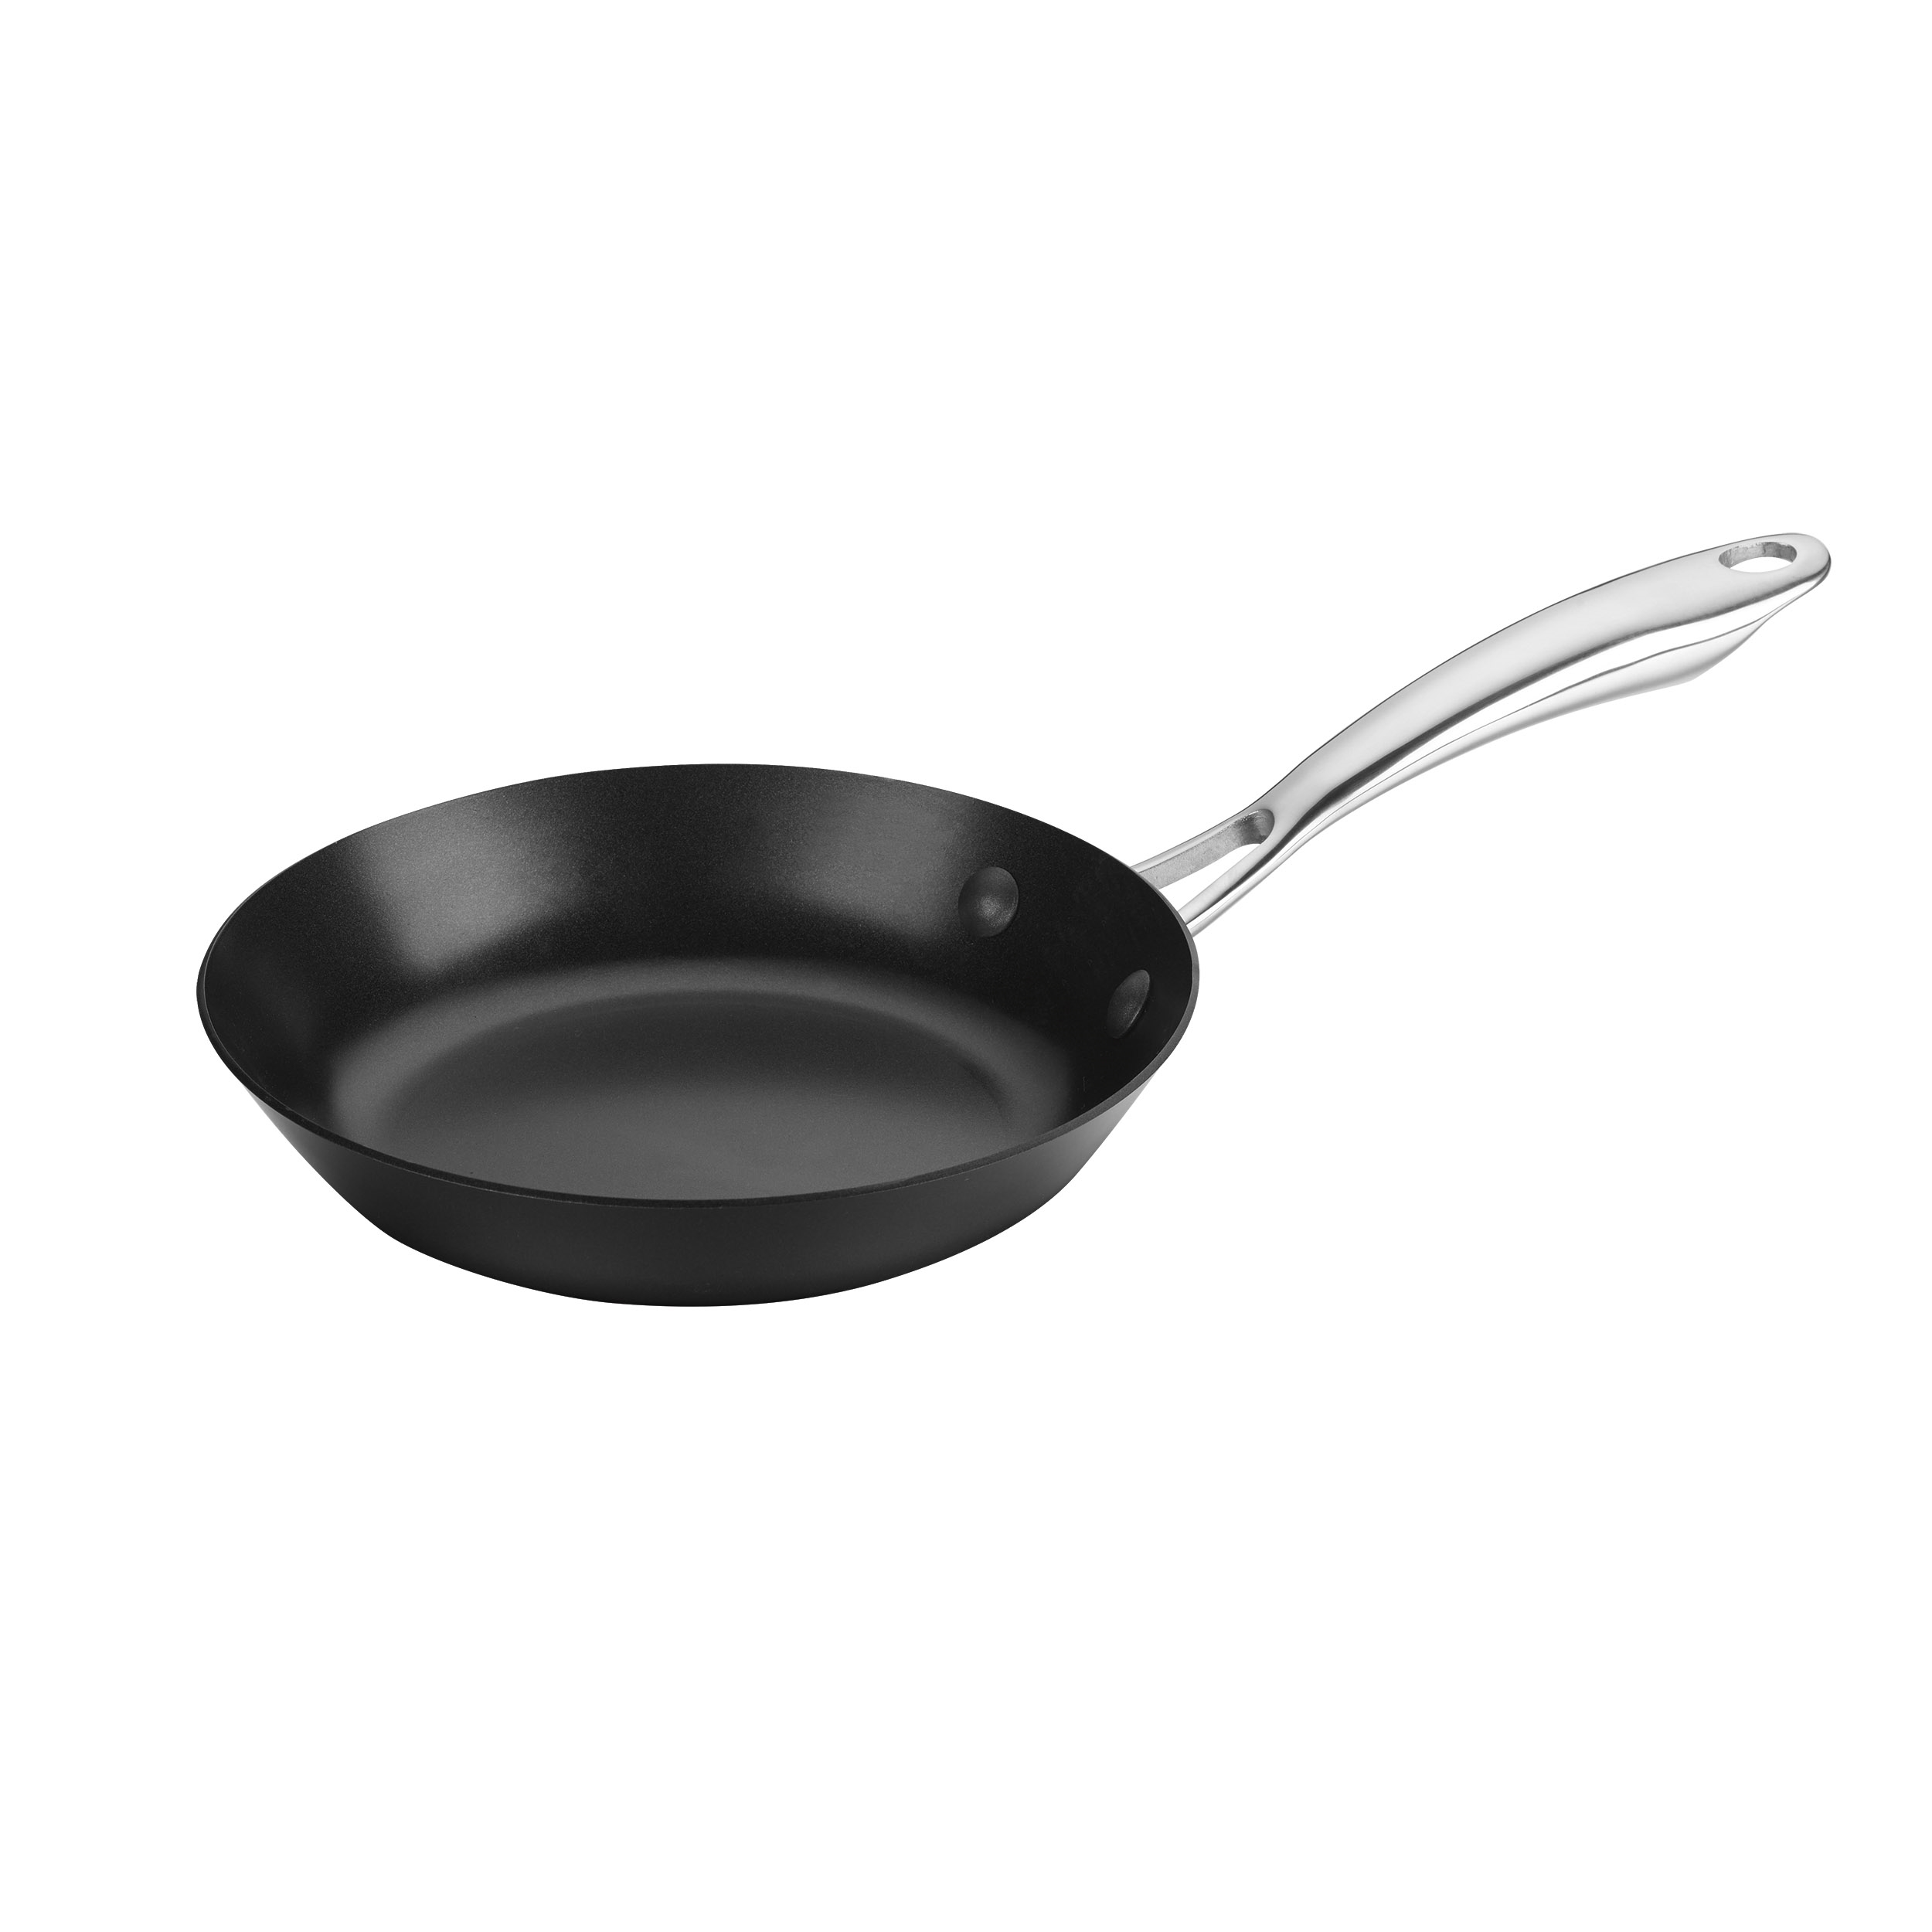 Carbonware 8" Carbon Steel Fry Pan